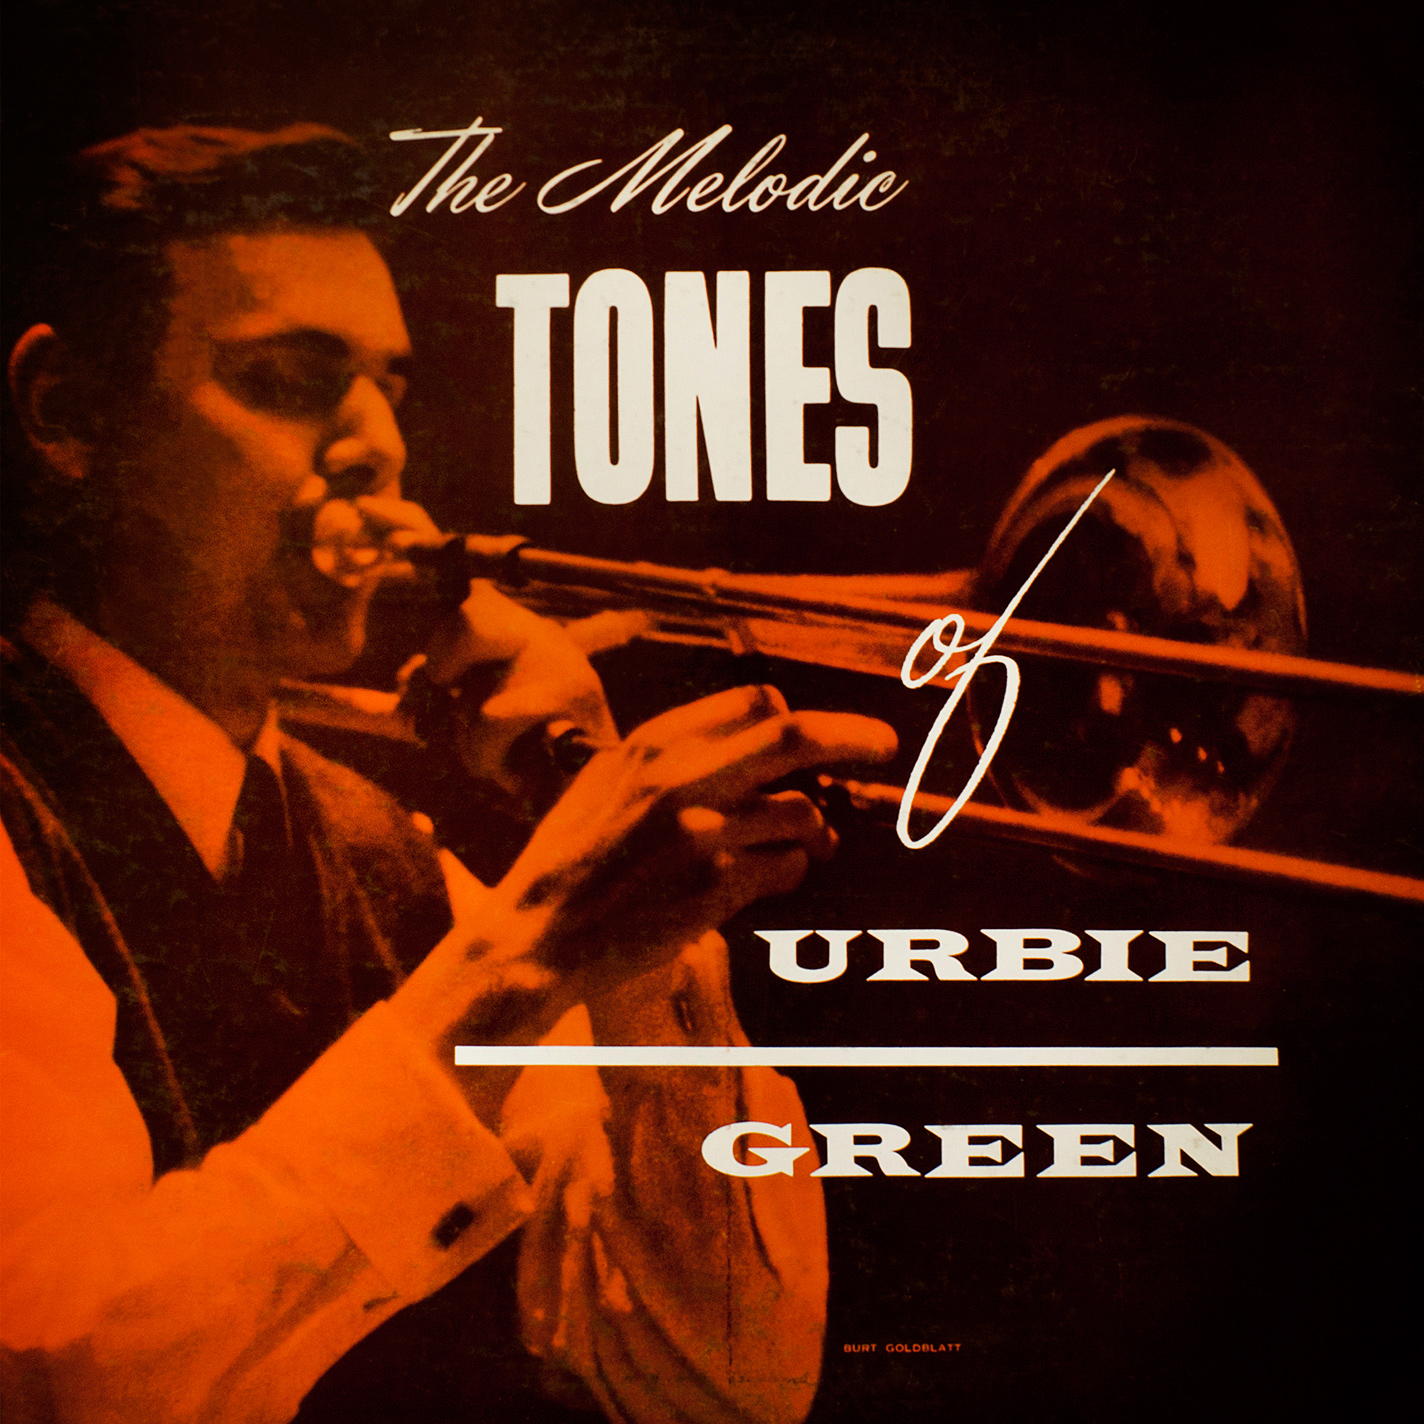 East Coast Jazz, Vol.6 - Urbie Green (1955/2014) [PrestoClassical FLAC 24bit/96kHz]